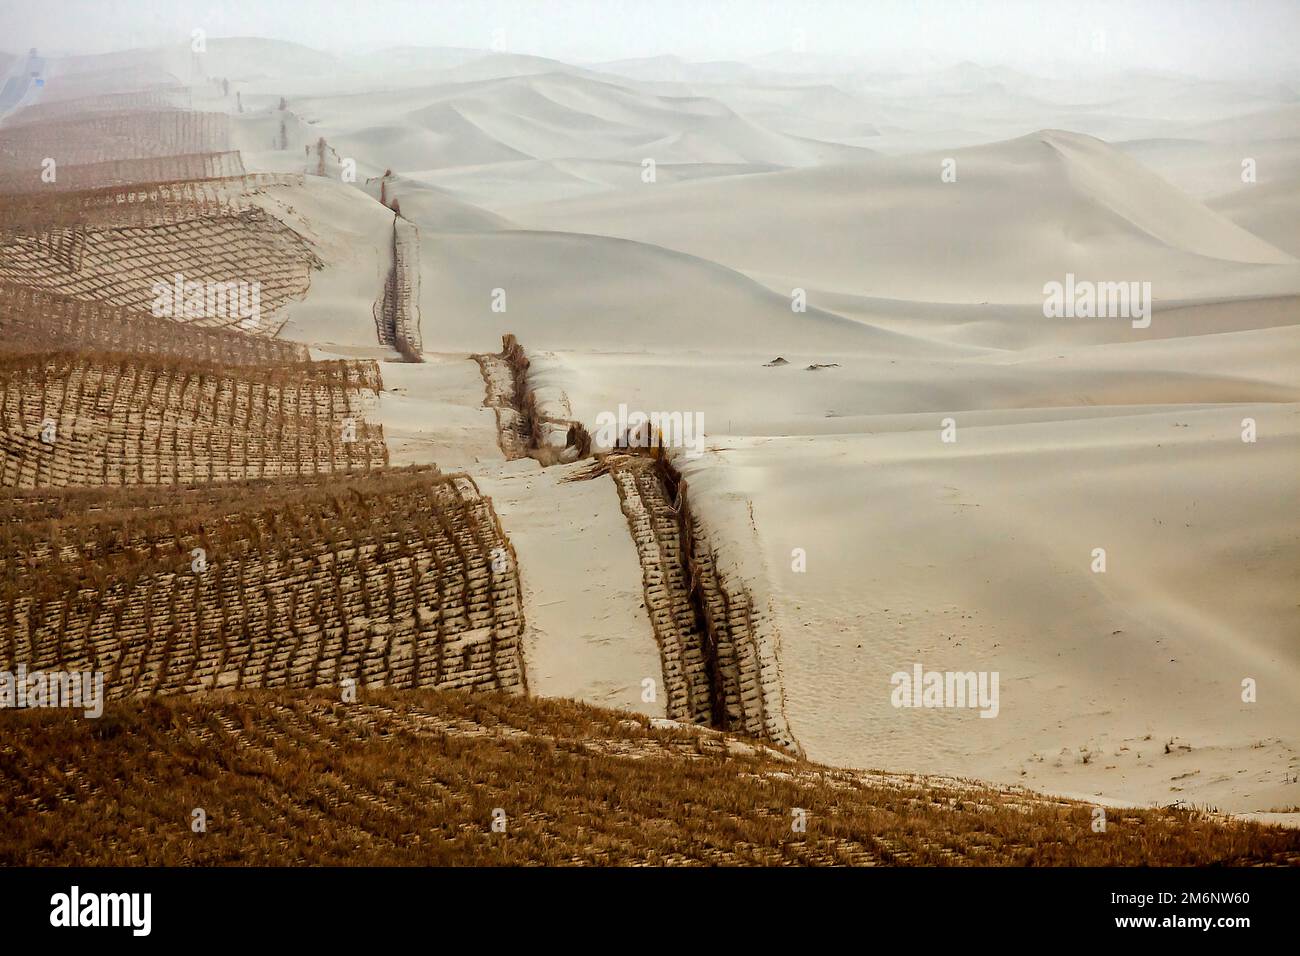 Stroh gepflanzt, um zu verhindern, dass sich der Wüstensand von Taklamakan auf Straßen und Wohngebiete verlagert. Tarim-Becken. Autonome Region Xinjiang (Sinkiang) Stockfoto